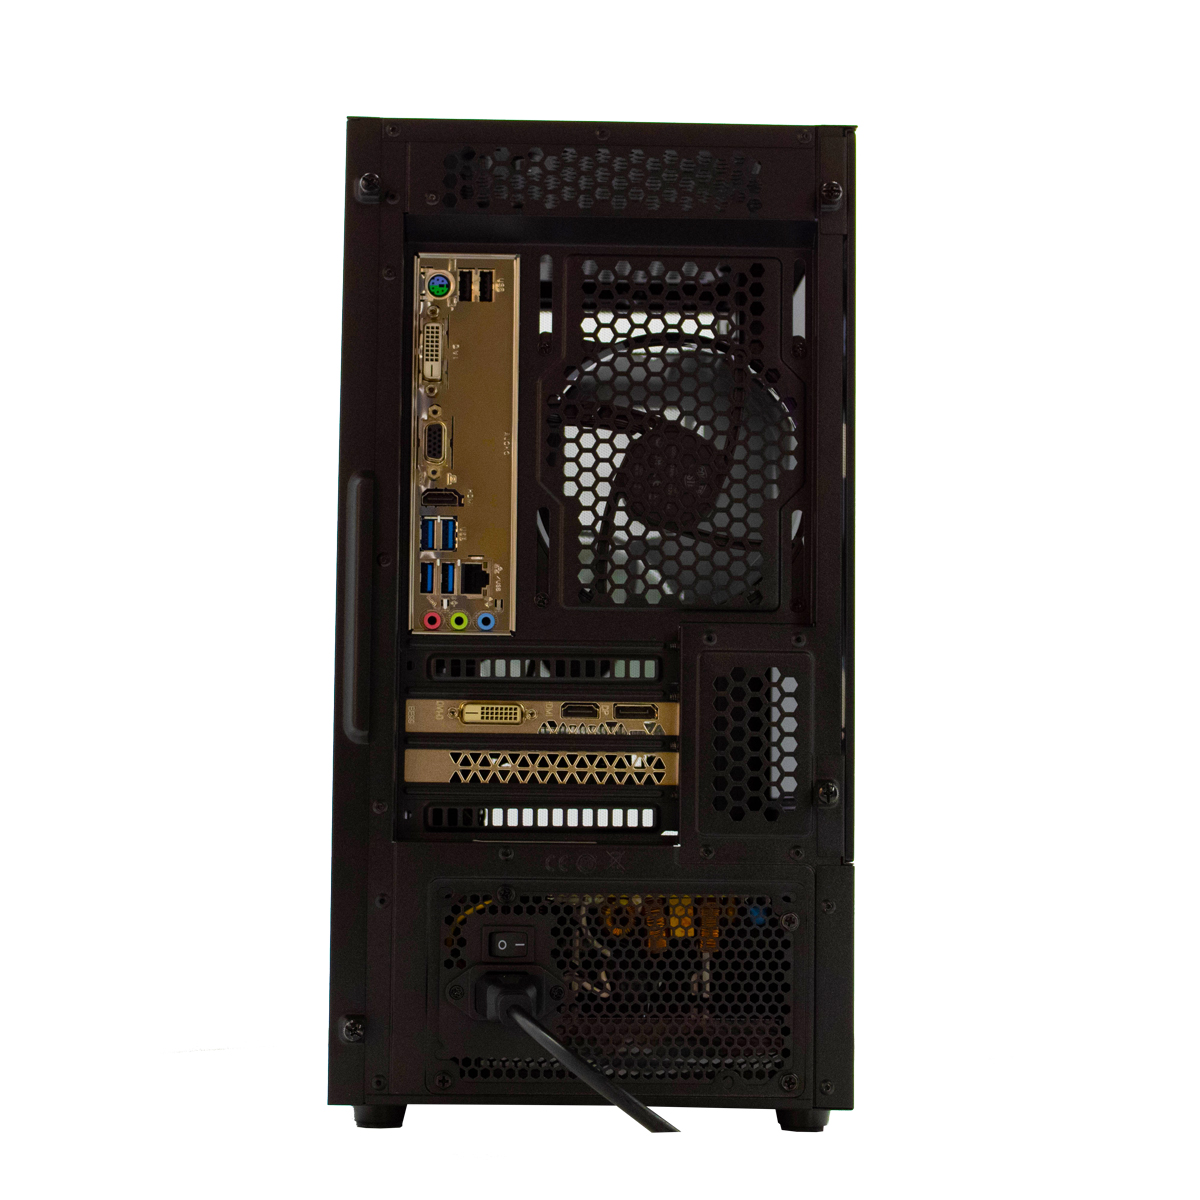 SCREENON Z401135 – V1, 8 GB Gaming PC, 240 Graphics Intel SSD, GB UHD RAM, 610